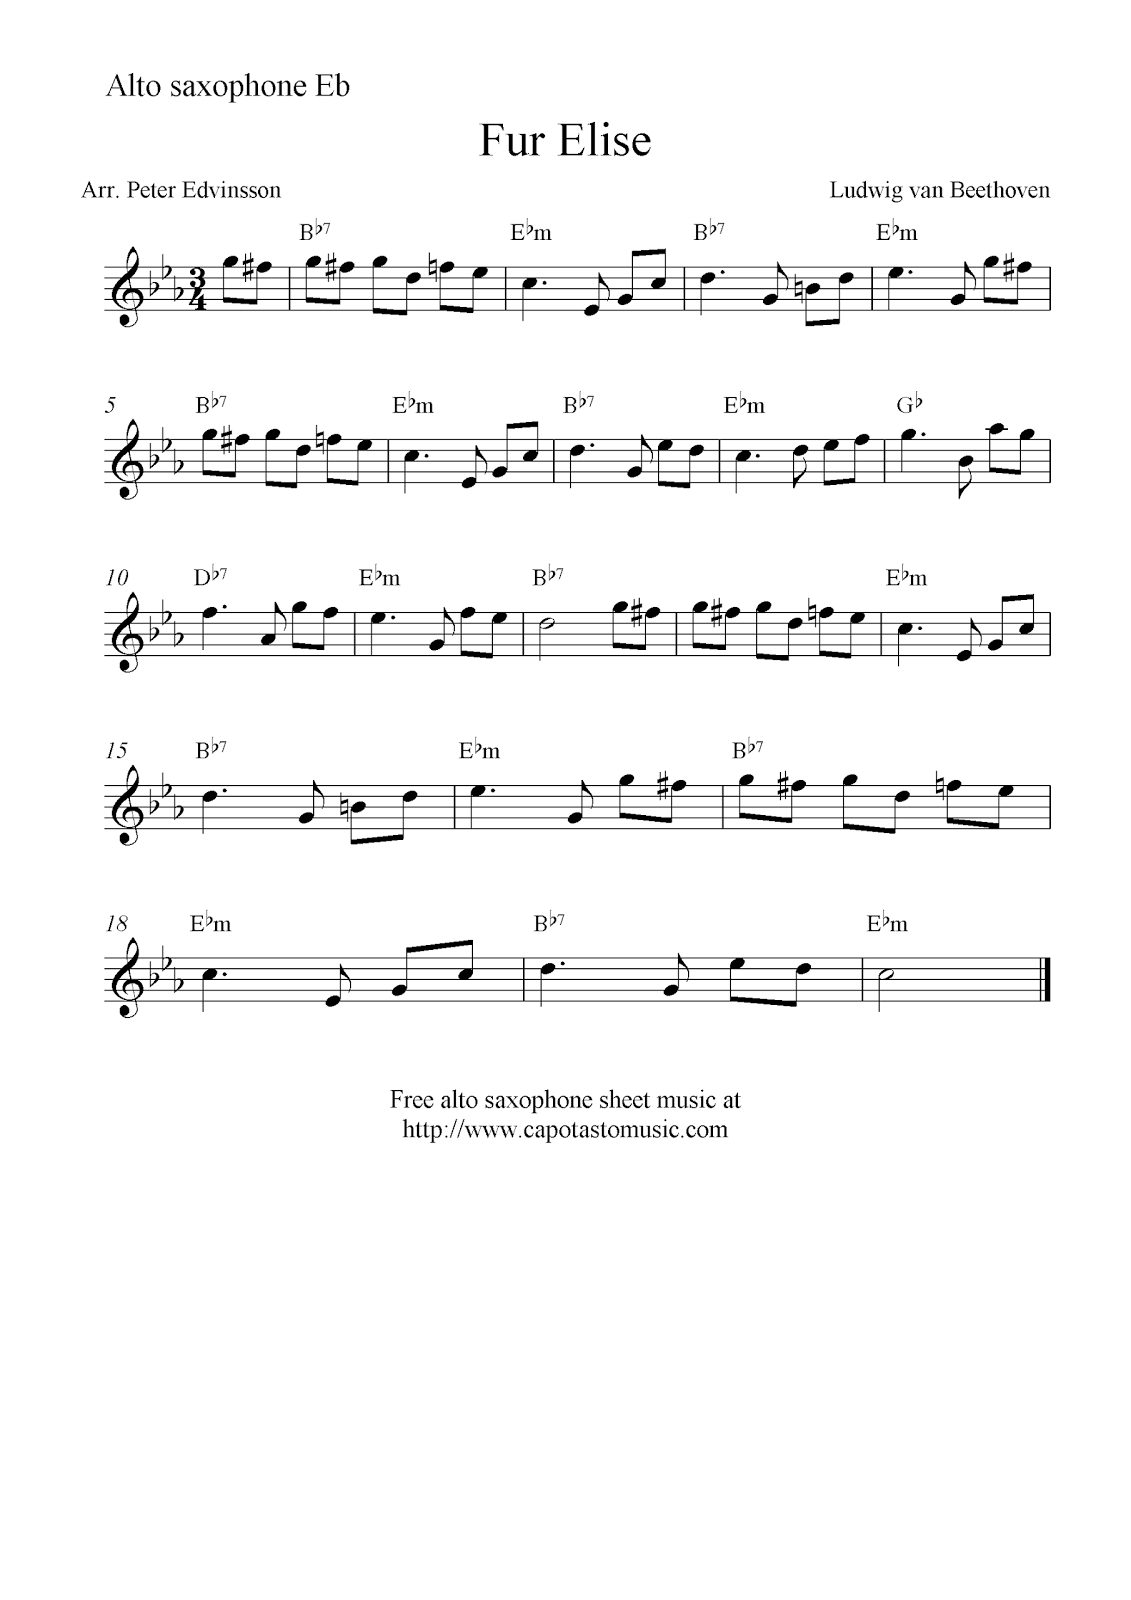 Fur Elise, Free Alto Saxophone Sheet Music Notes - Free Printable Piano Sheet Music Fur Elise